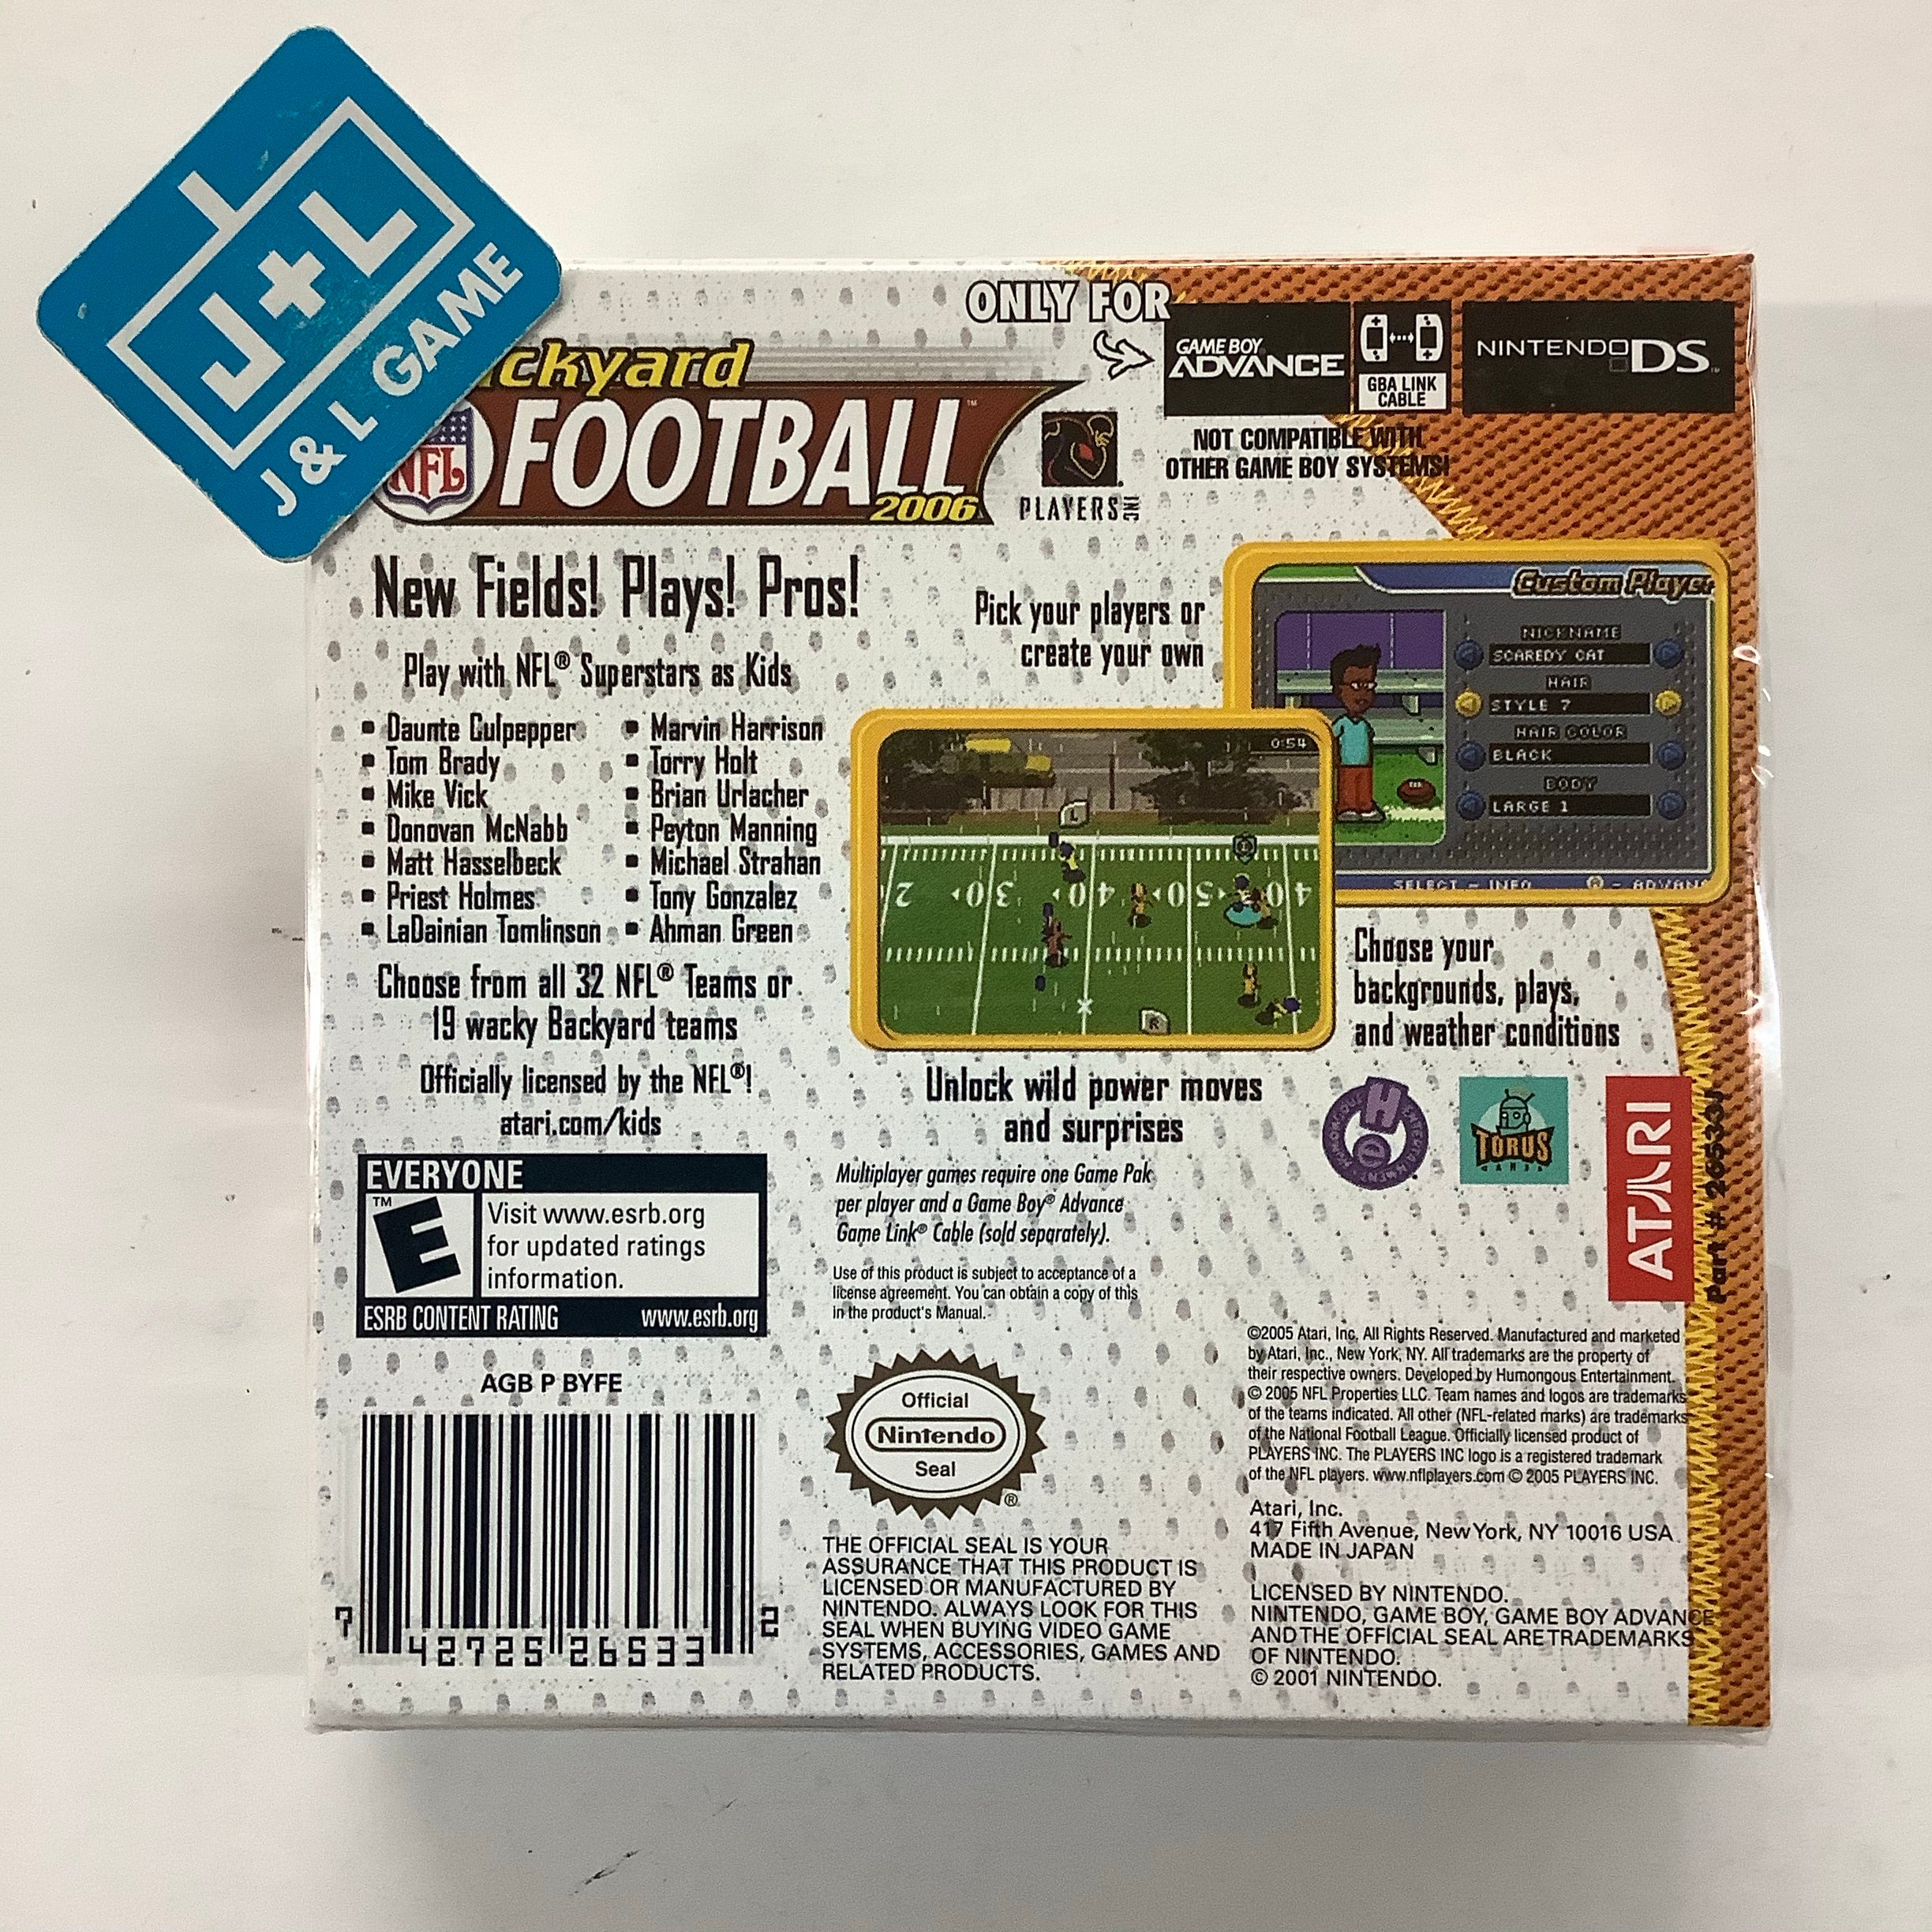 Backyard Football 2006 - (GBA) Game Boy Advance Video Games Atari SA   